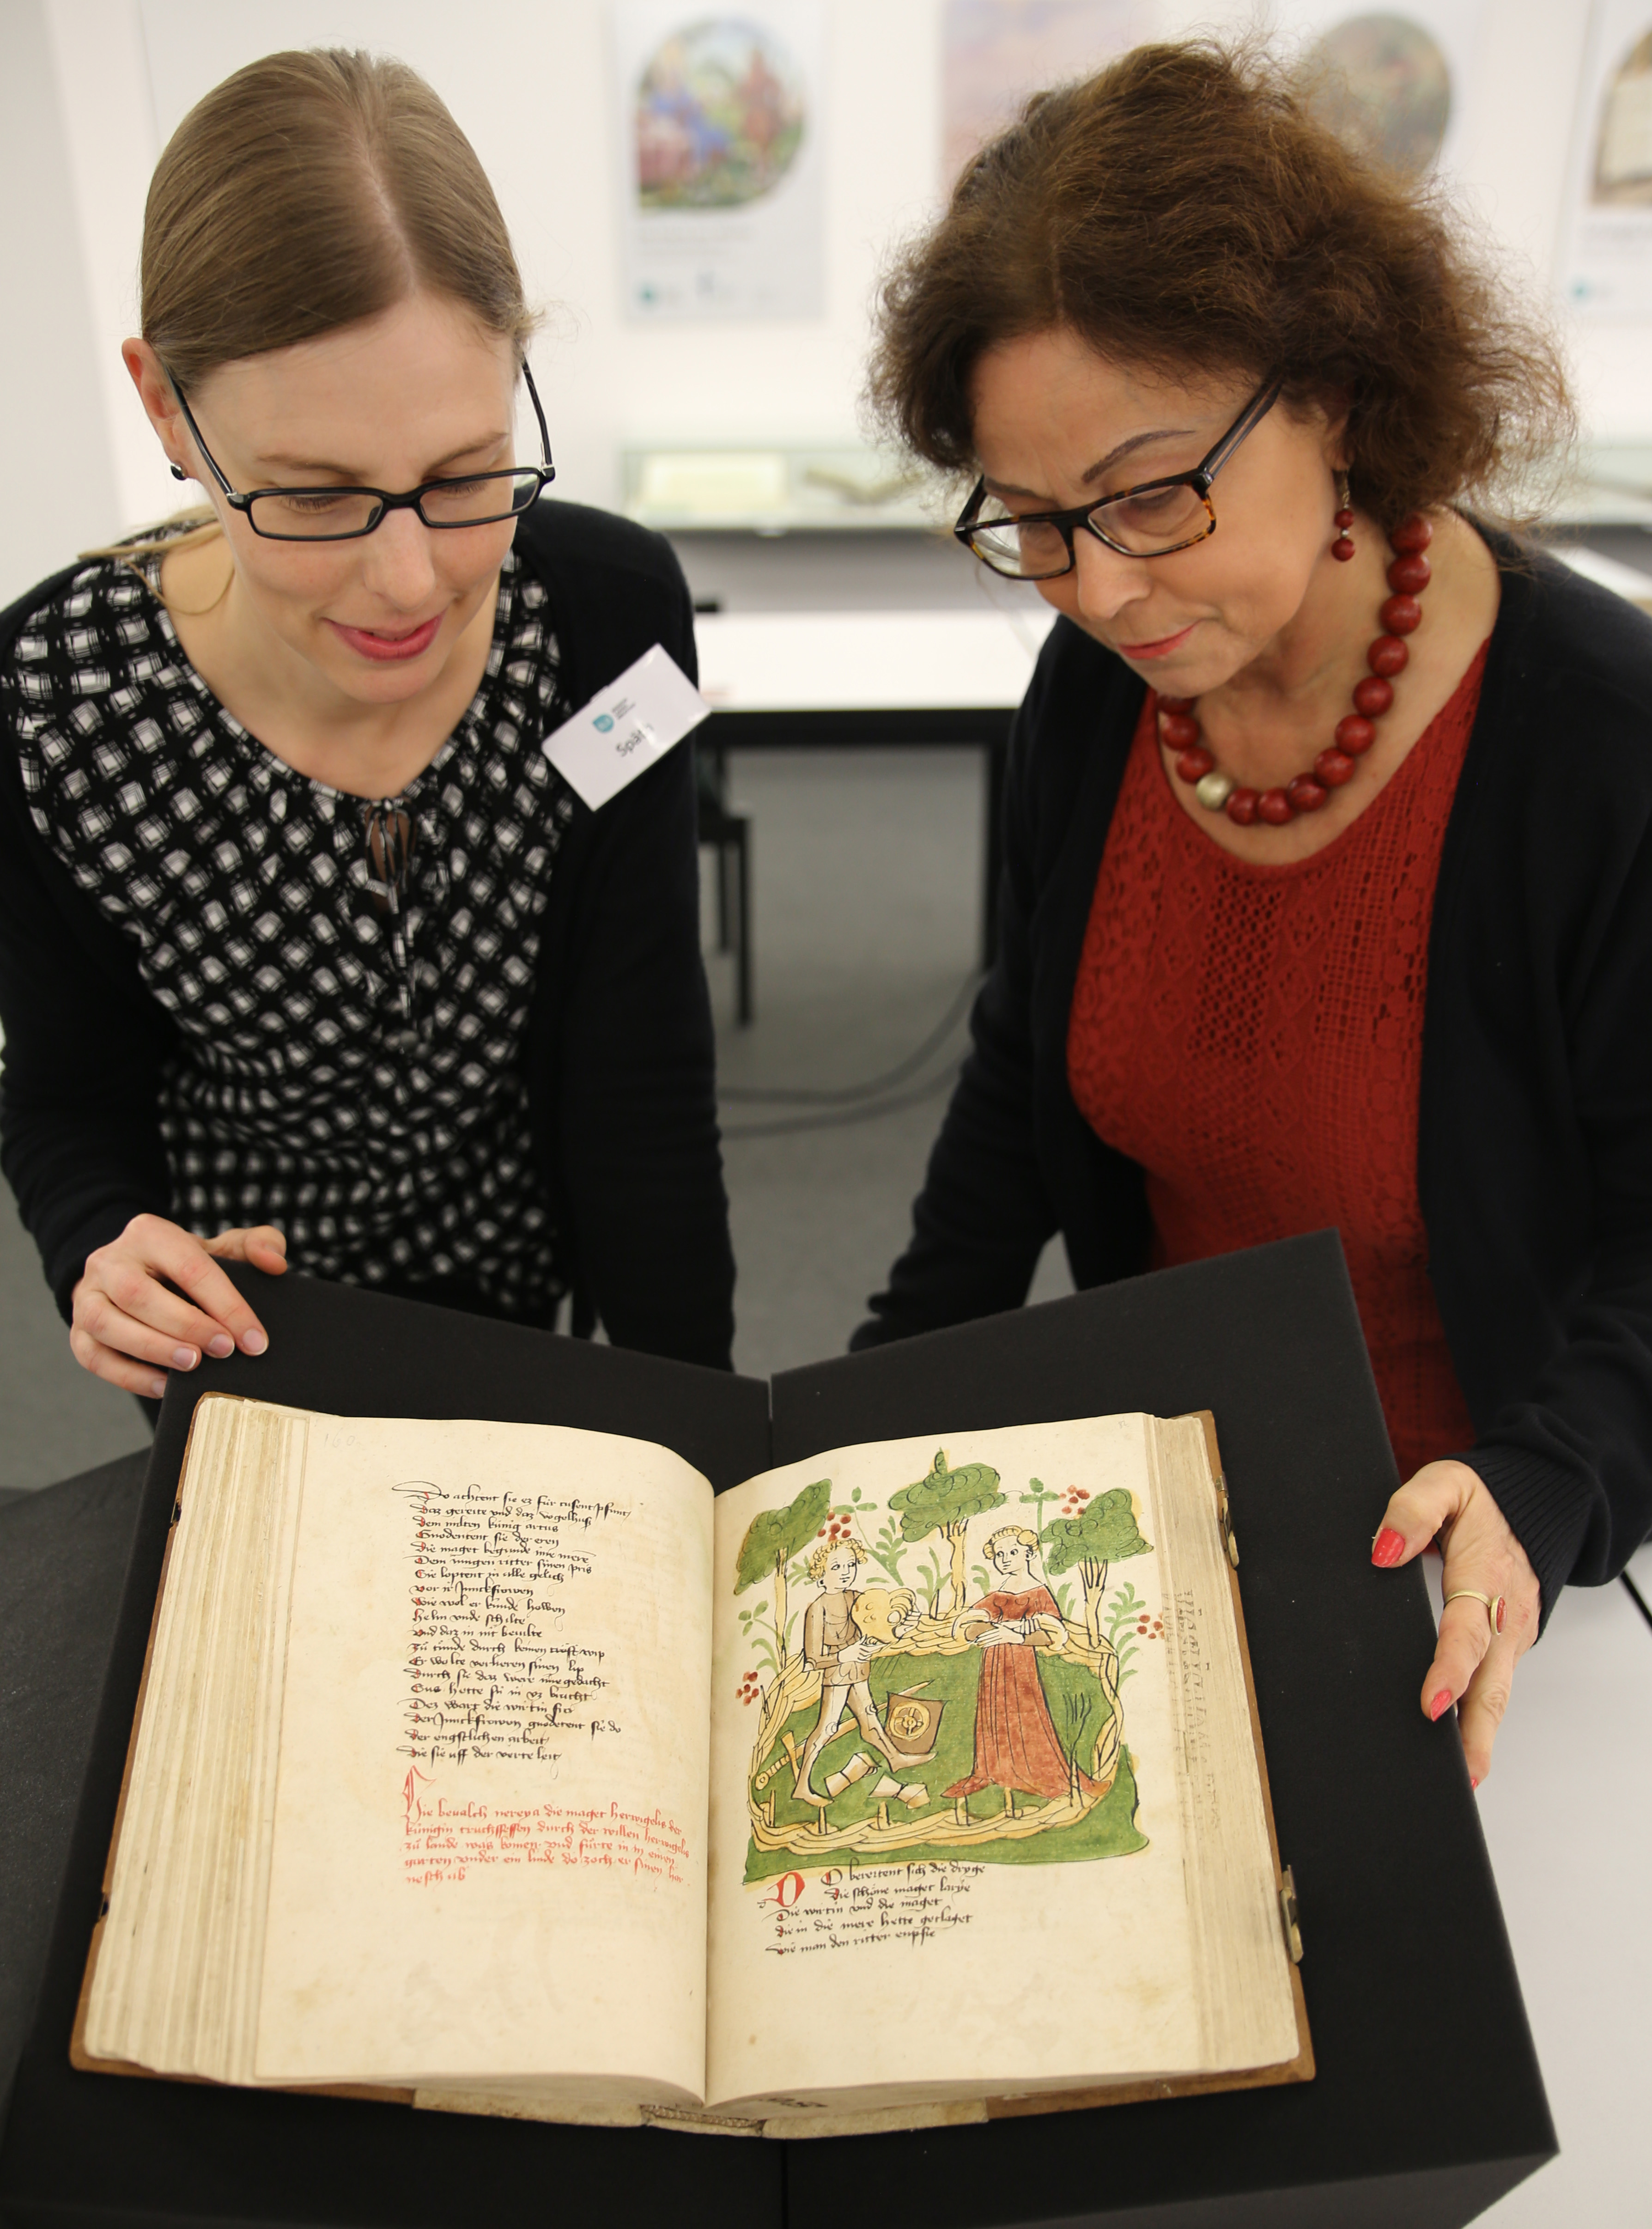 Zwei Mitarbeiterinnen der BLB präsentieren die Wigalois Handschrift. Das aufgeschlagene Buch zeigt links eine Seite mit handschrift, rechts eine Seite mit einer bildlichen Darstellung.